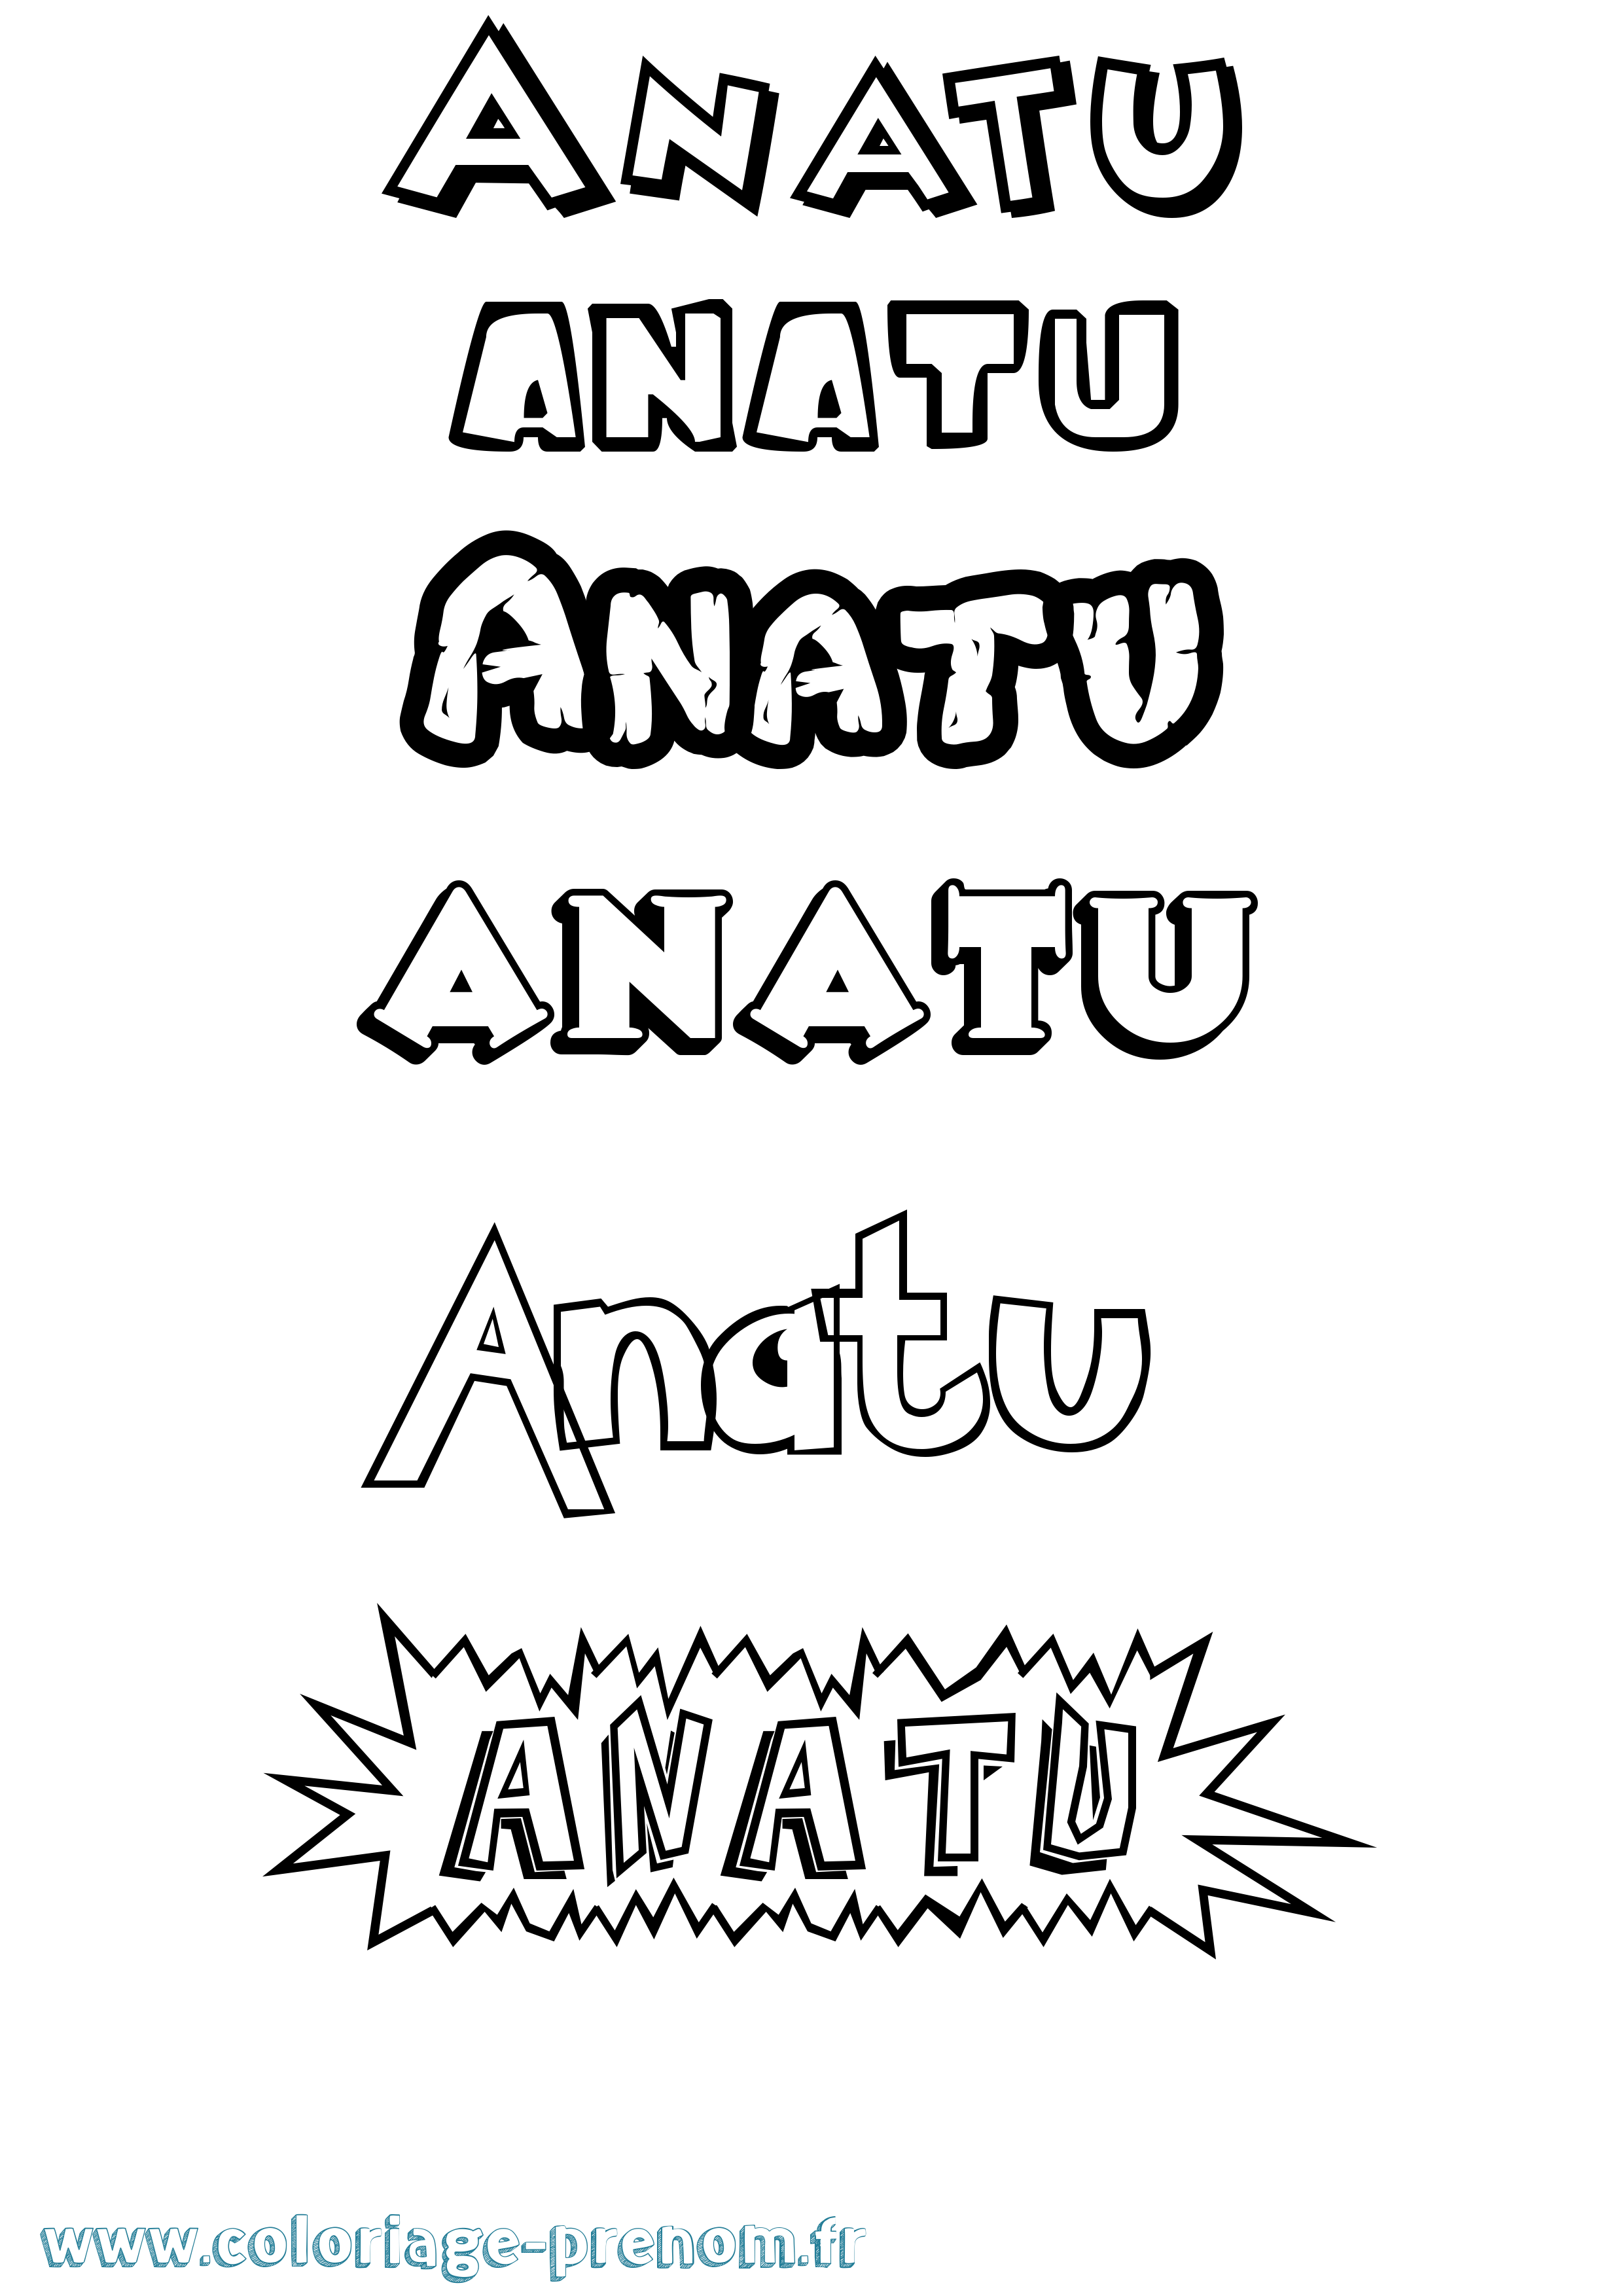 Coloriage prénom Anatu Dessin Animé